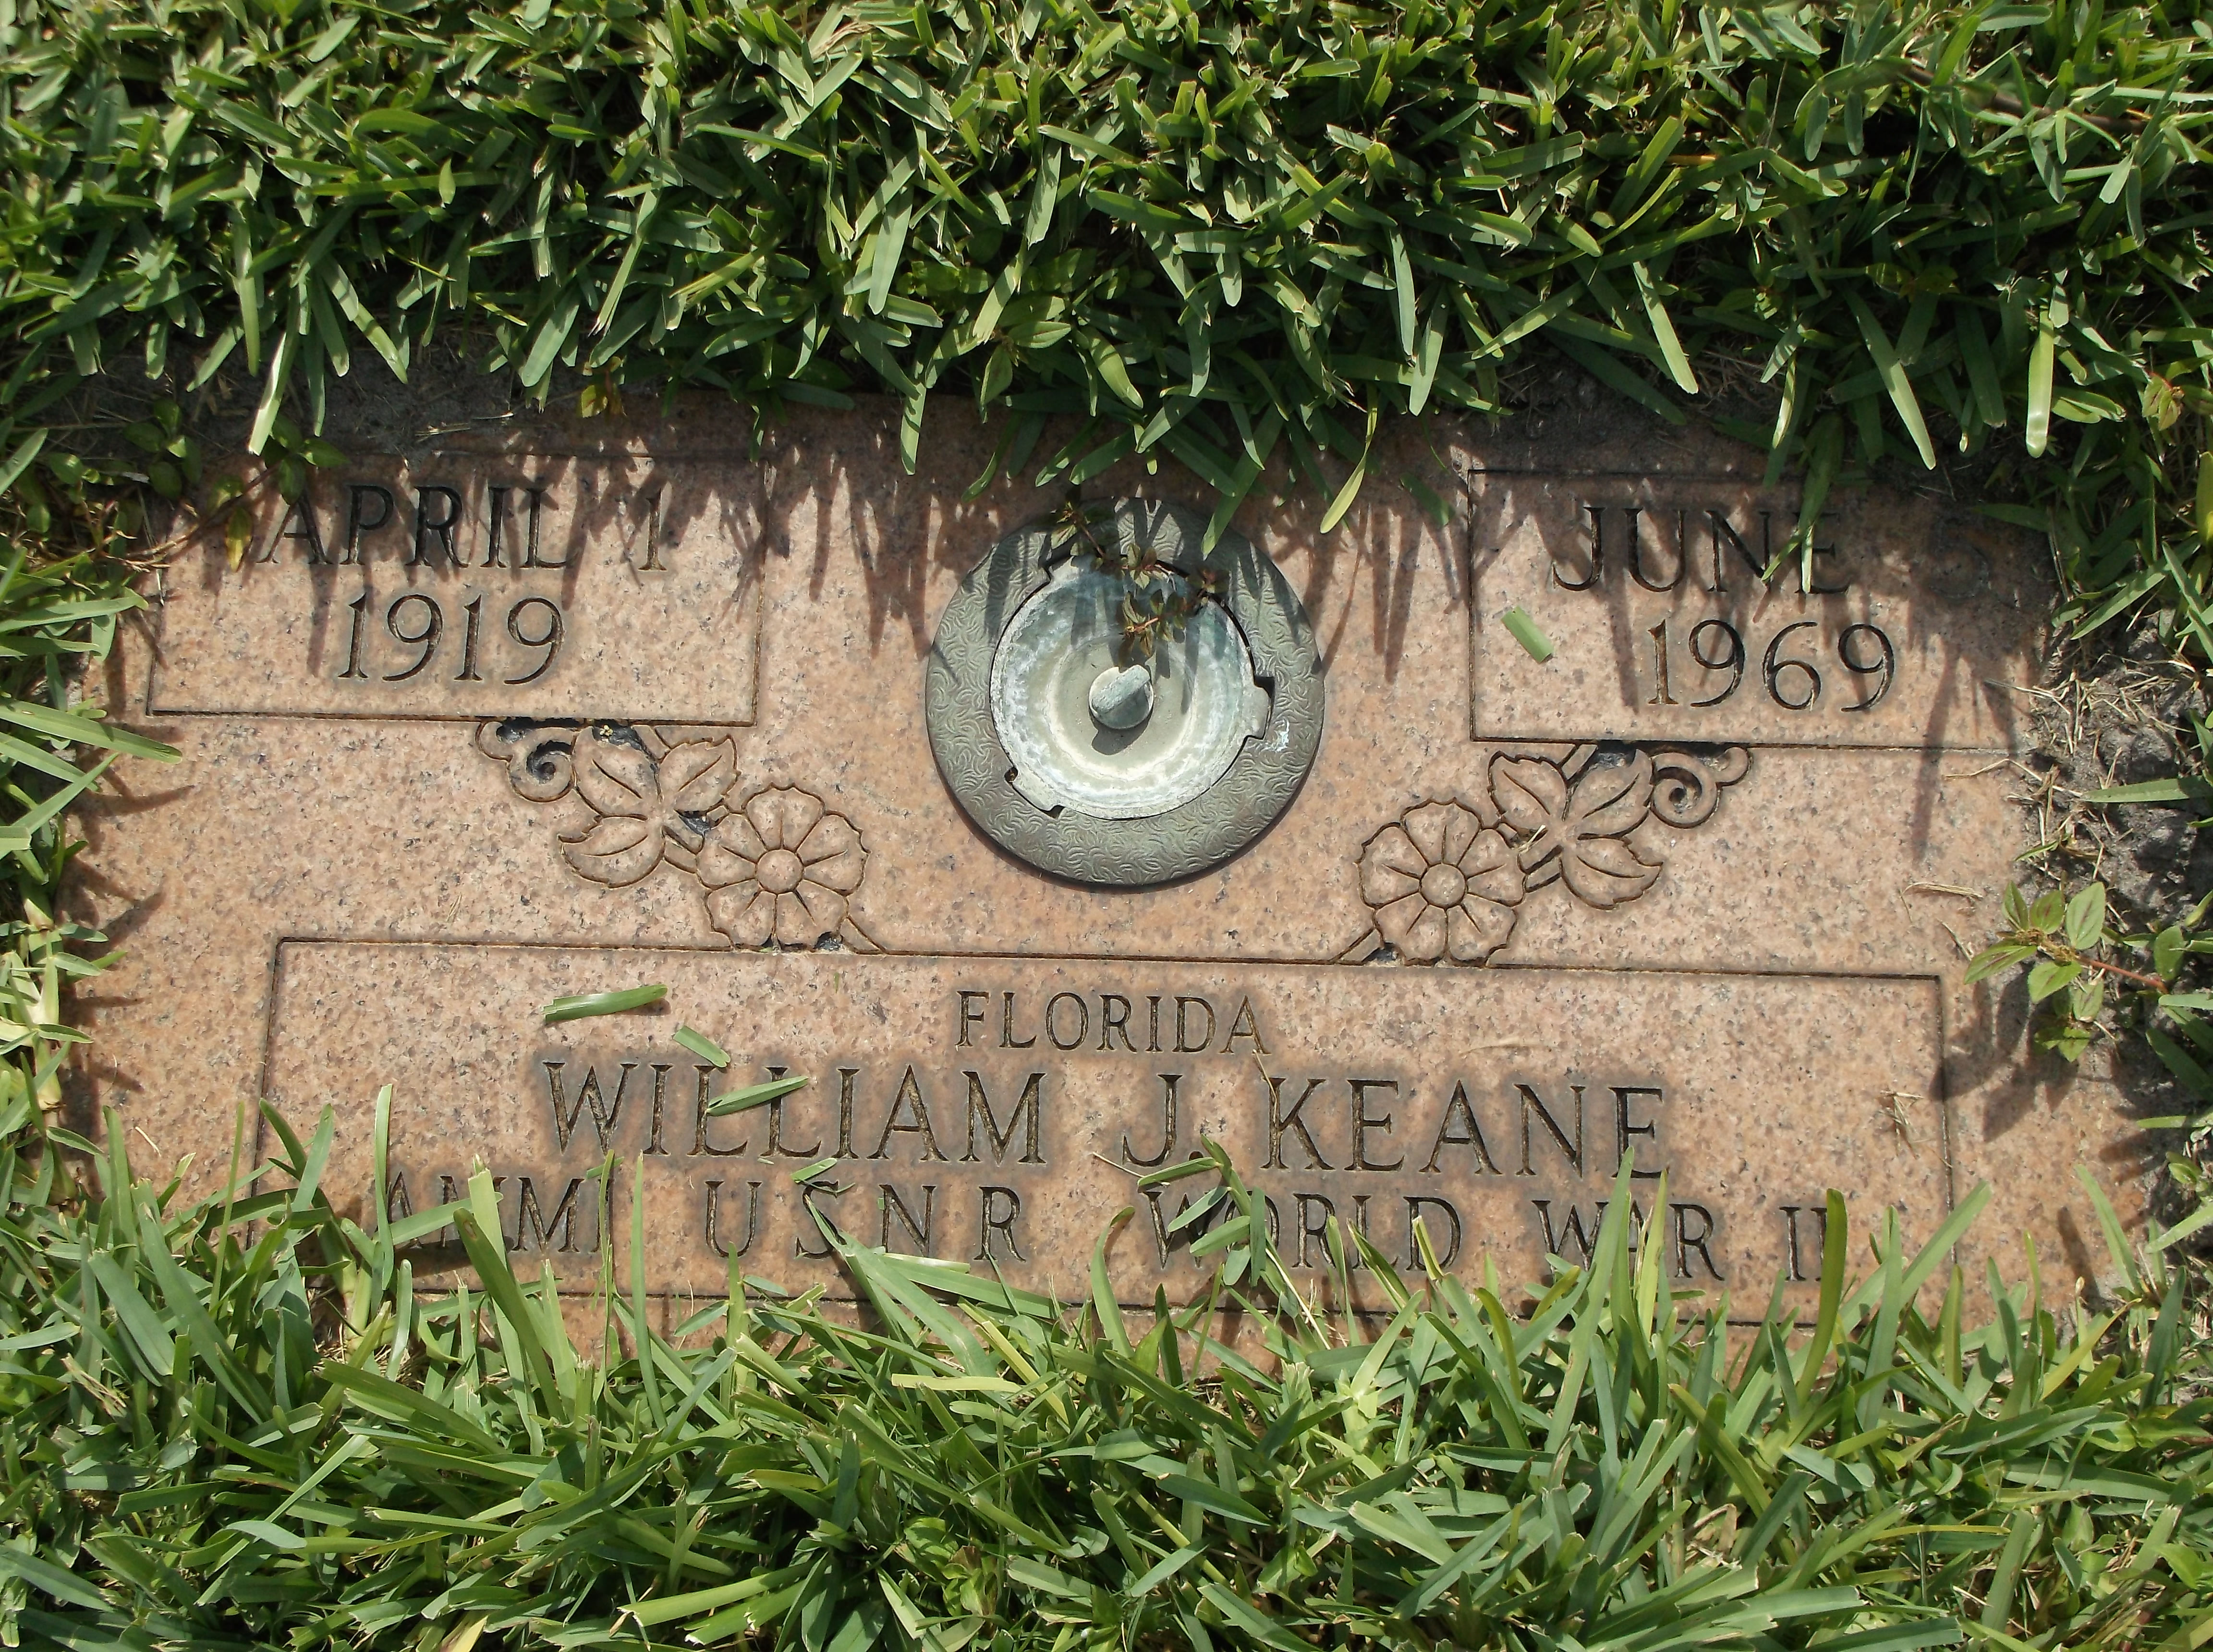 William J Keane